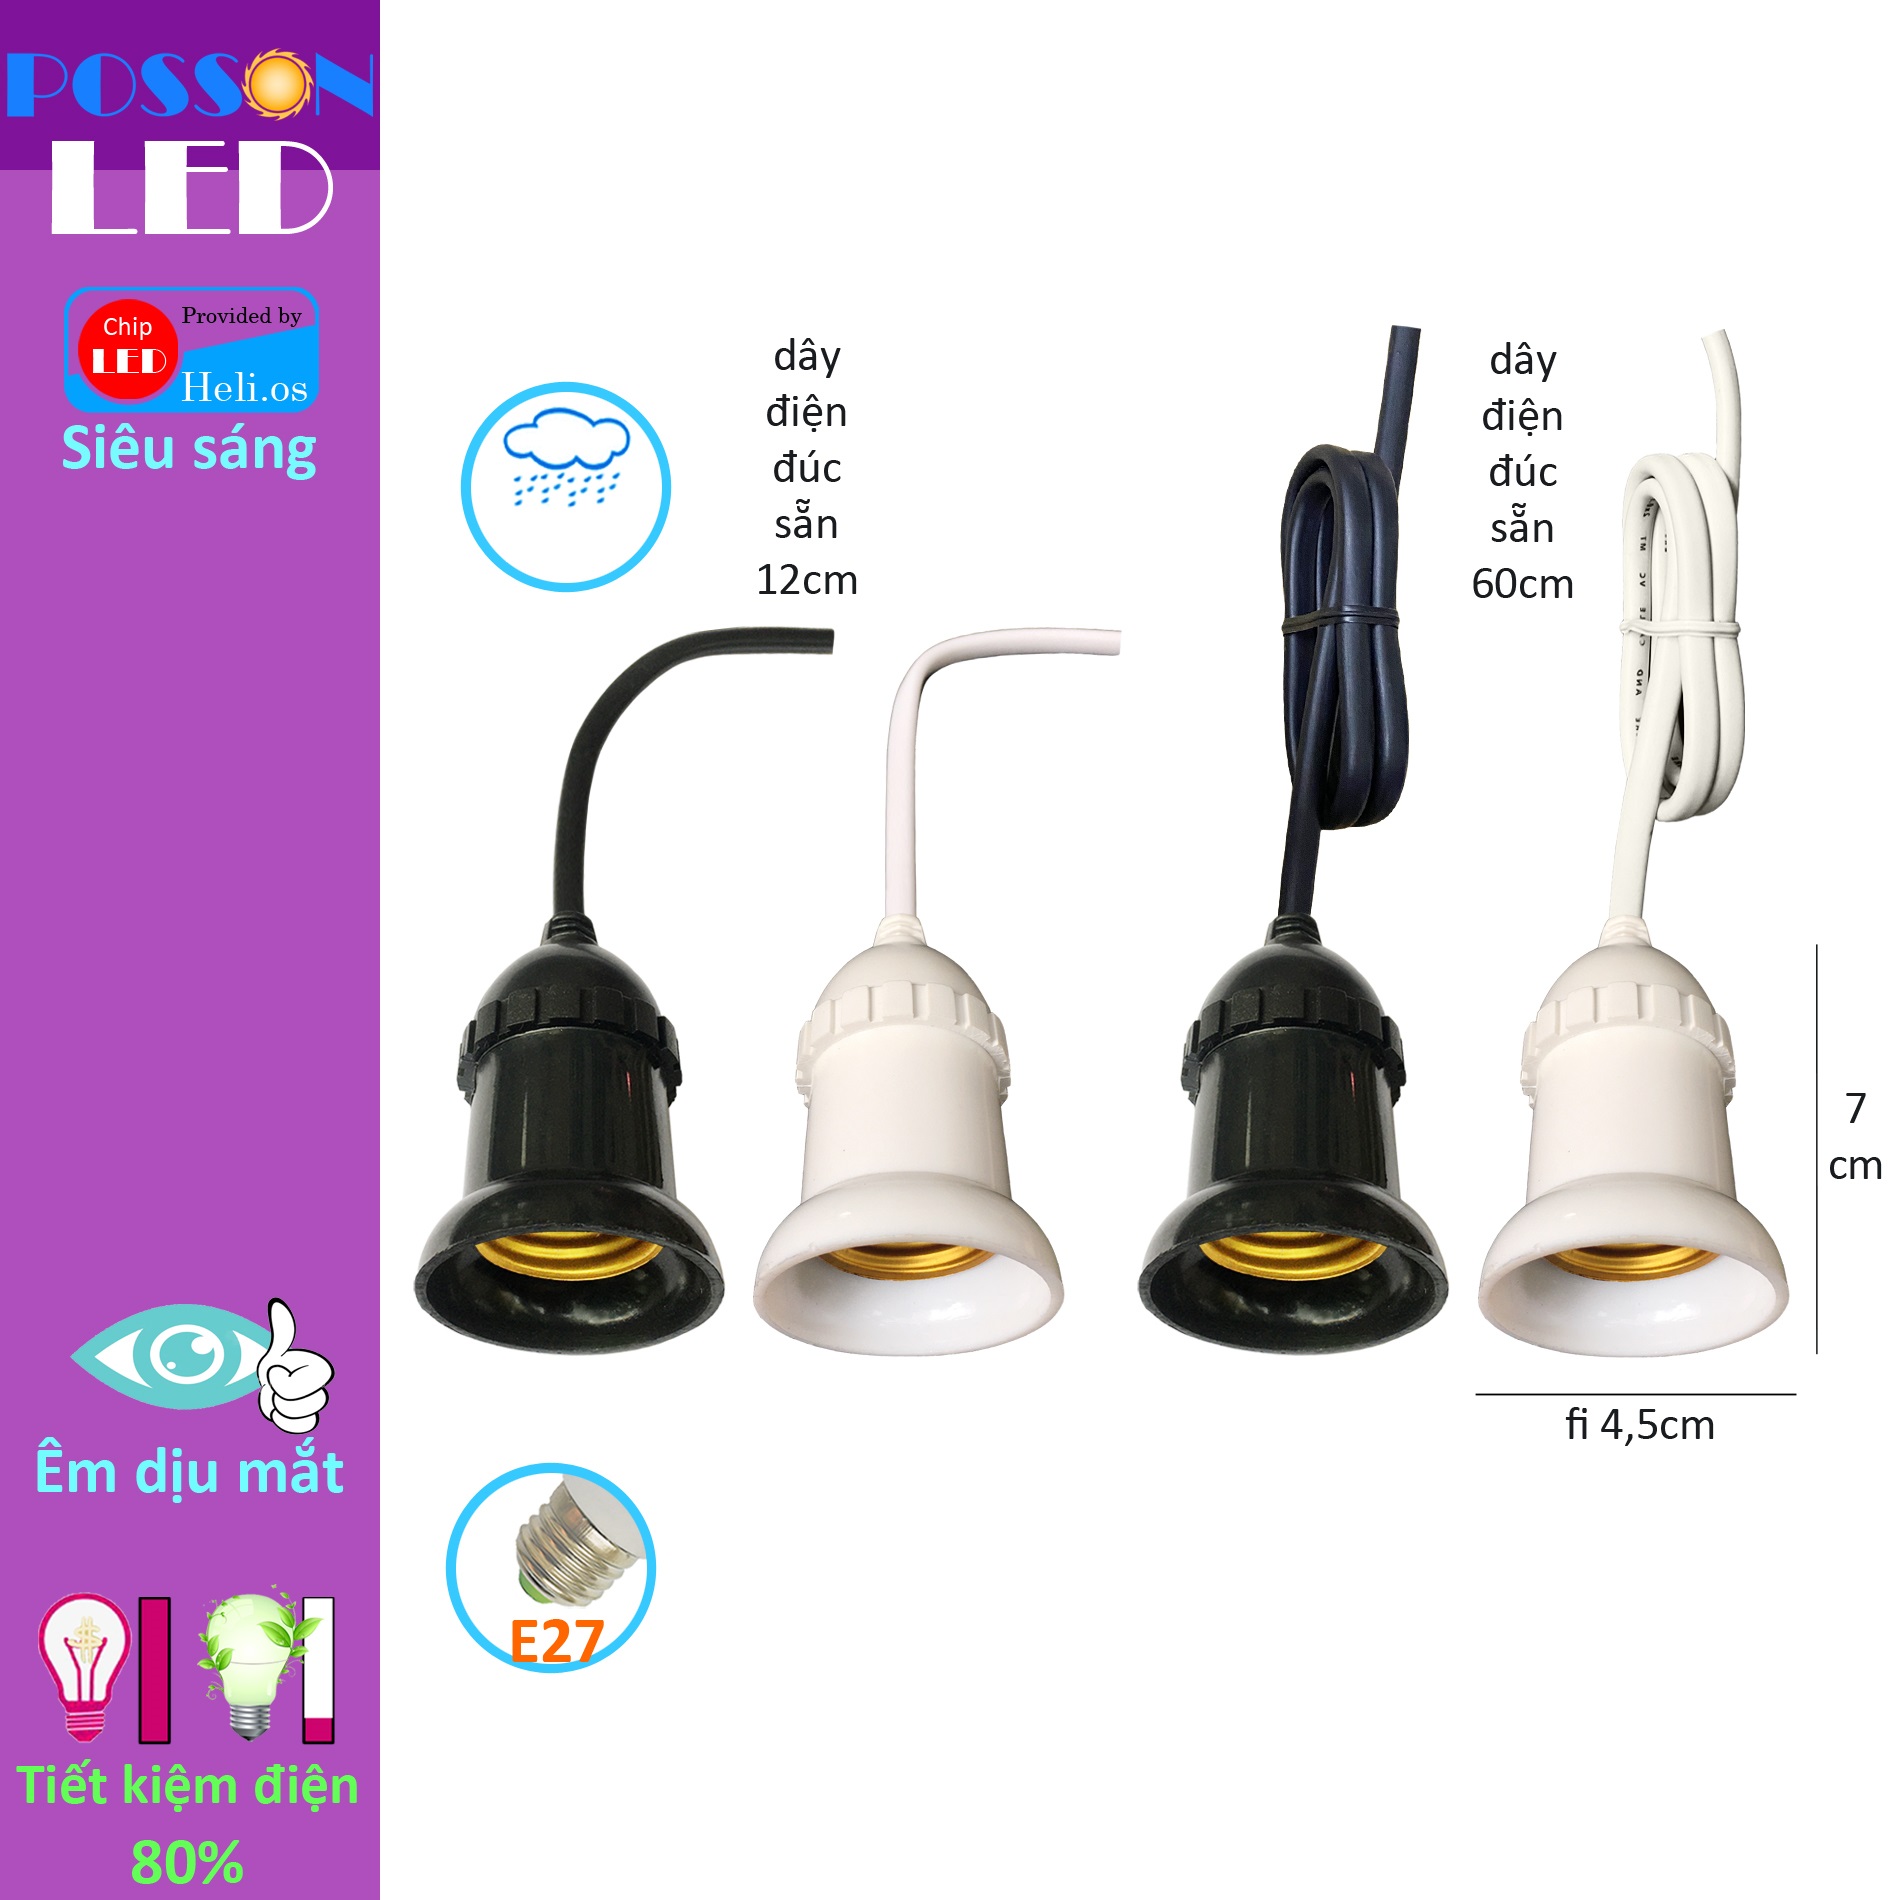 10 Đui đèn E27 chống mưa chịu nước đuôi xoáy đúc liền dây điện 12cm 60cm